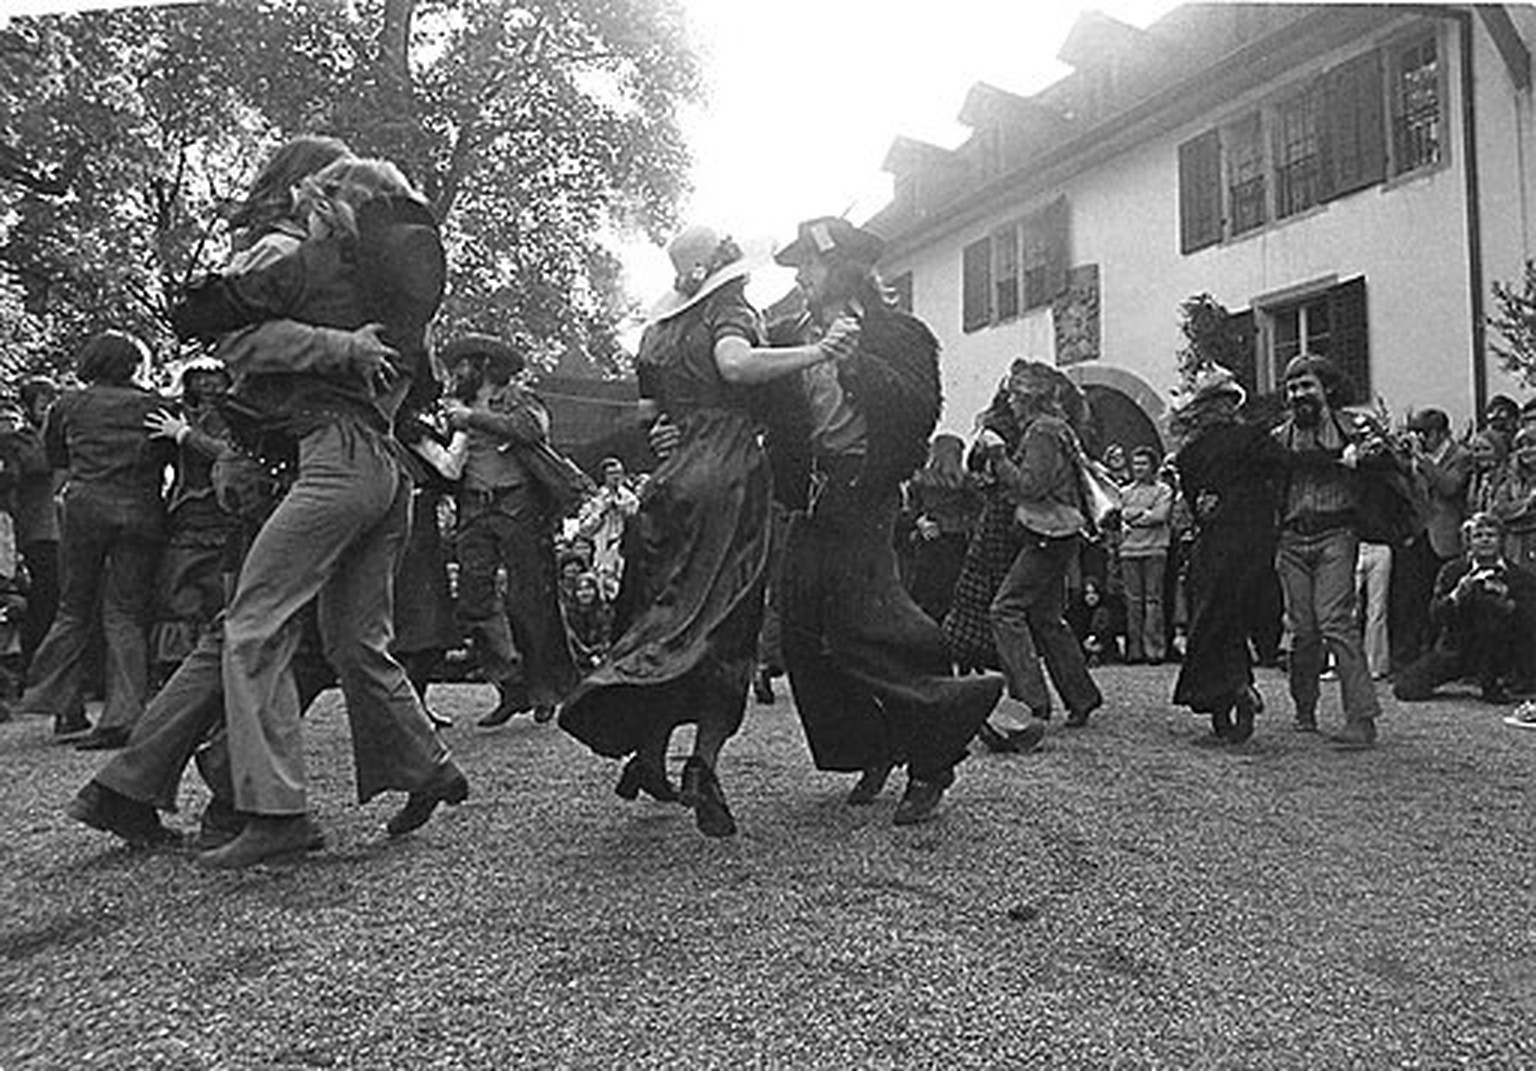 Folkfestival auf der Lenzburg, 1972